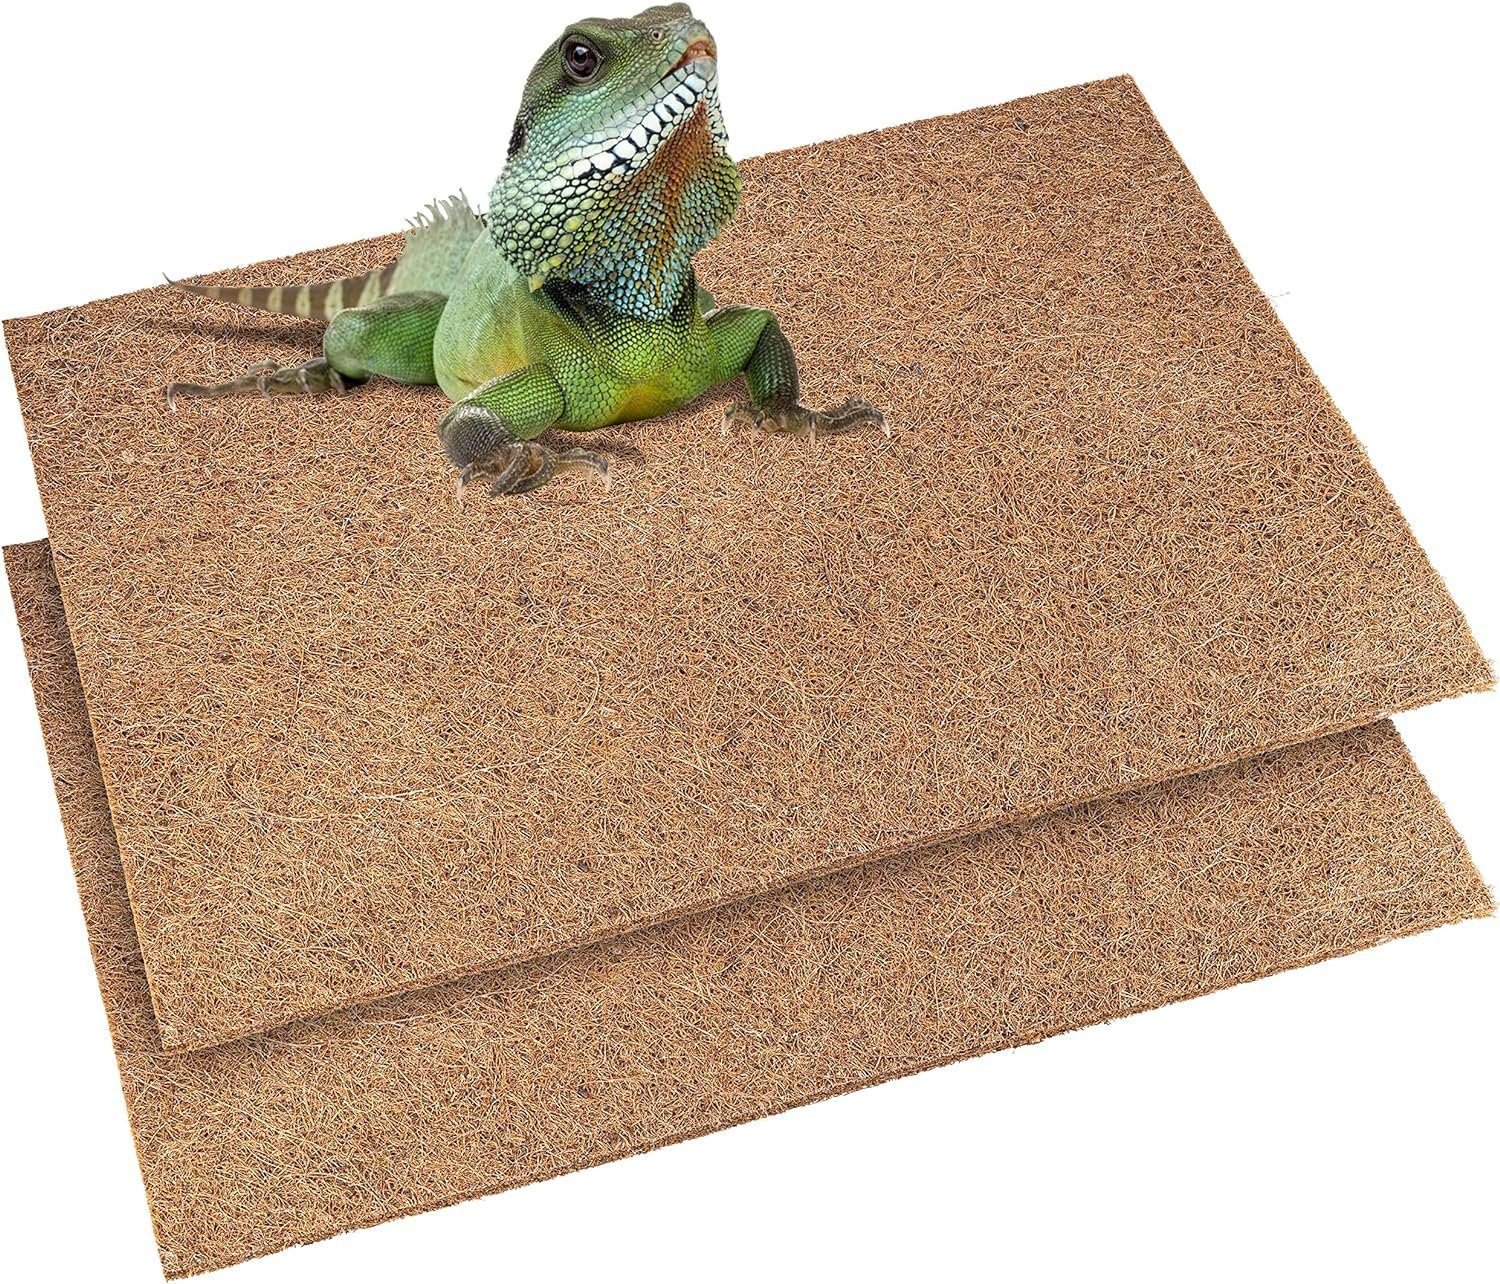 Nagerteppich.de Kleintierstreu Reptilien Teppich für Terrarium 60x40 cm, 2er Set, Kokosmatte